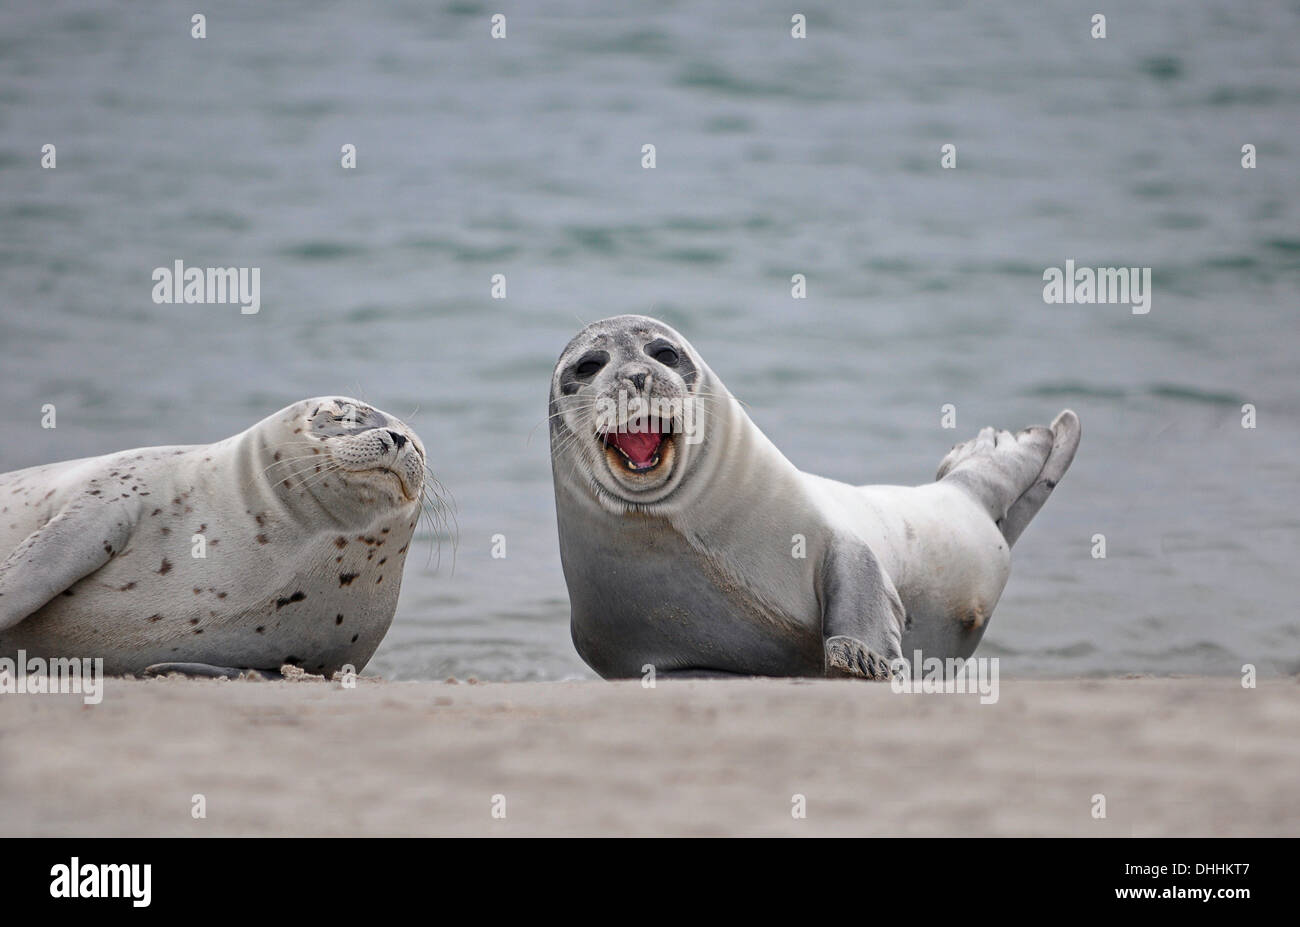 Dos focas comunes (Phoca vitulina) en la playa, uno con la boca abierta, Düne isla Helgoland, Schleswig-Holstein, Alemania Foto de stock